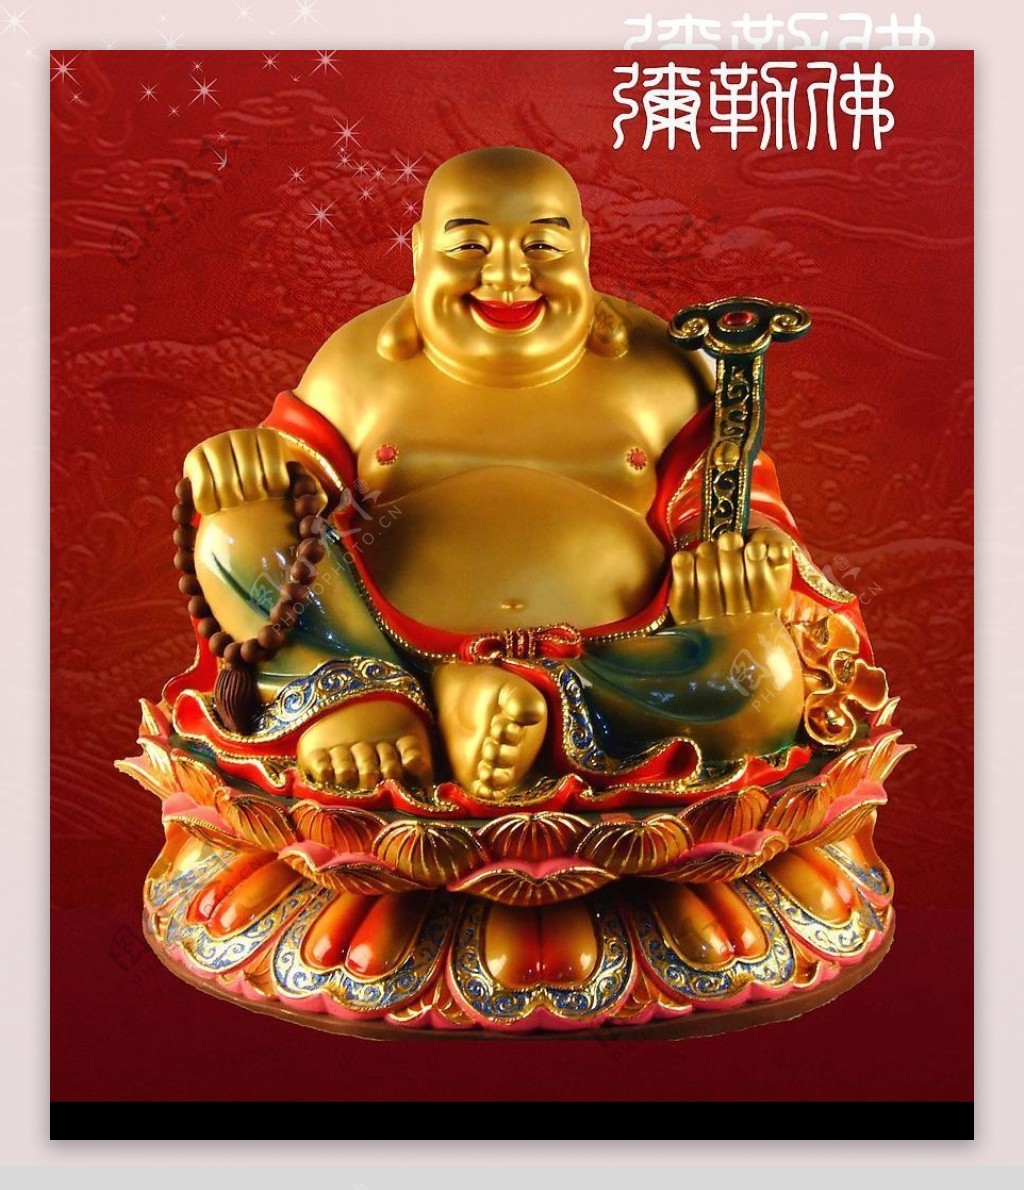 弥勒佛坐像 | 慈山寺佛教艺术博物馆